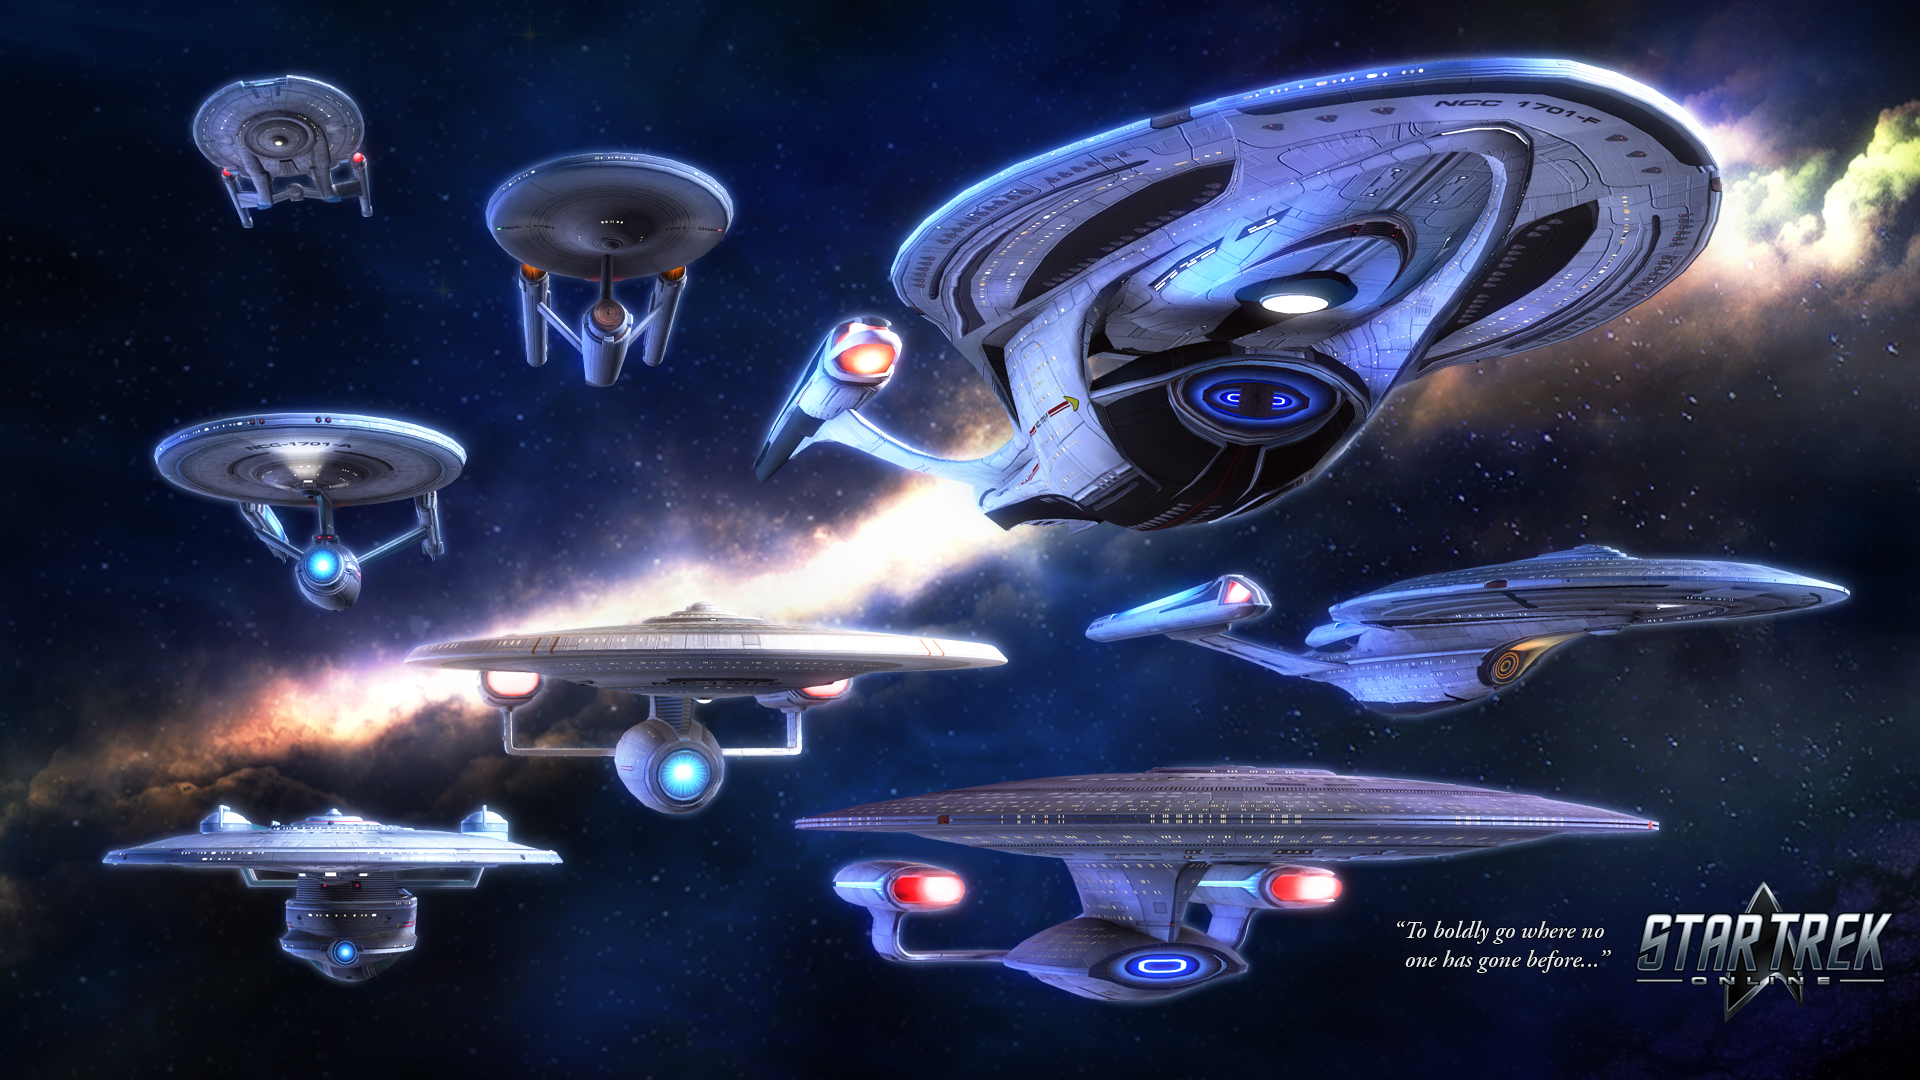 New Wallpaper Available Star Trek Online